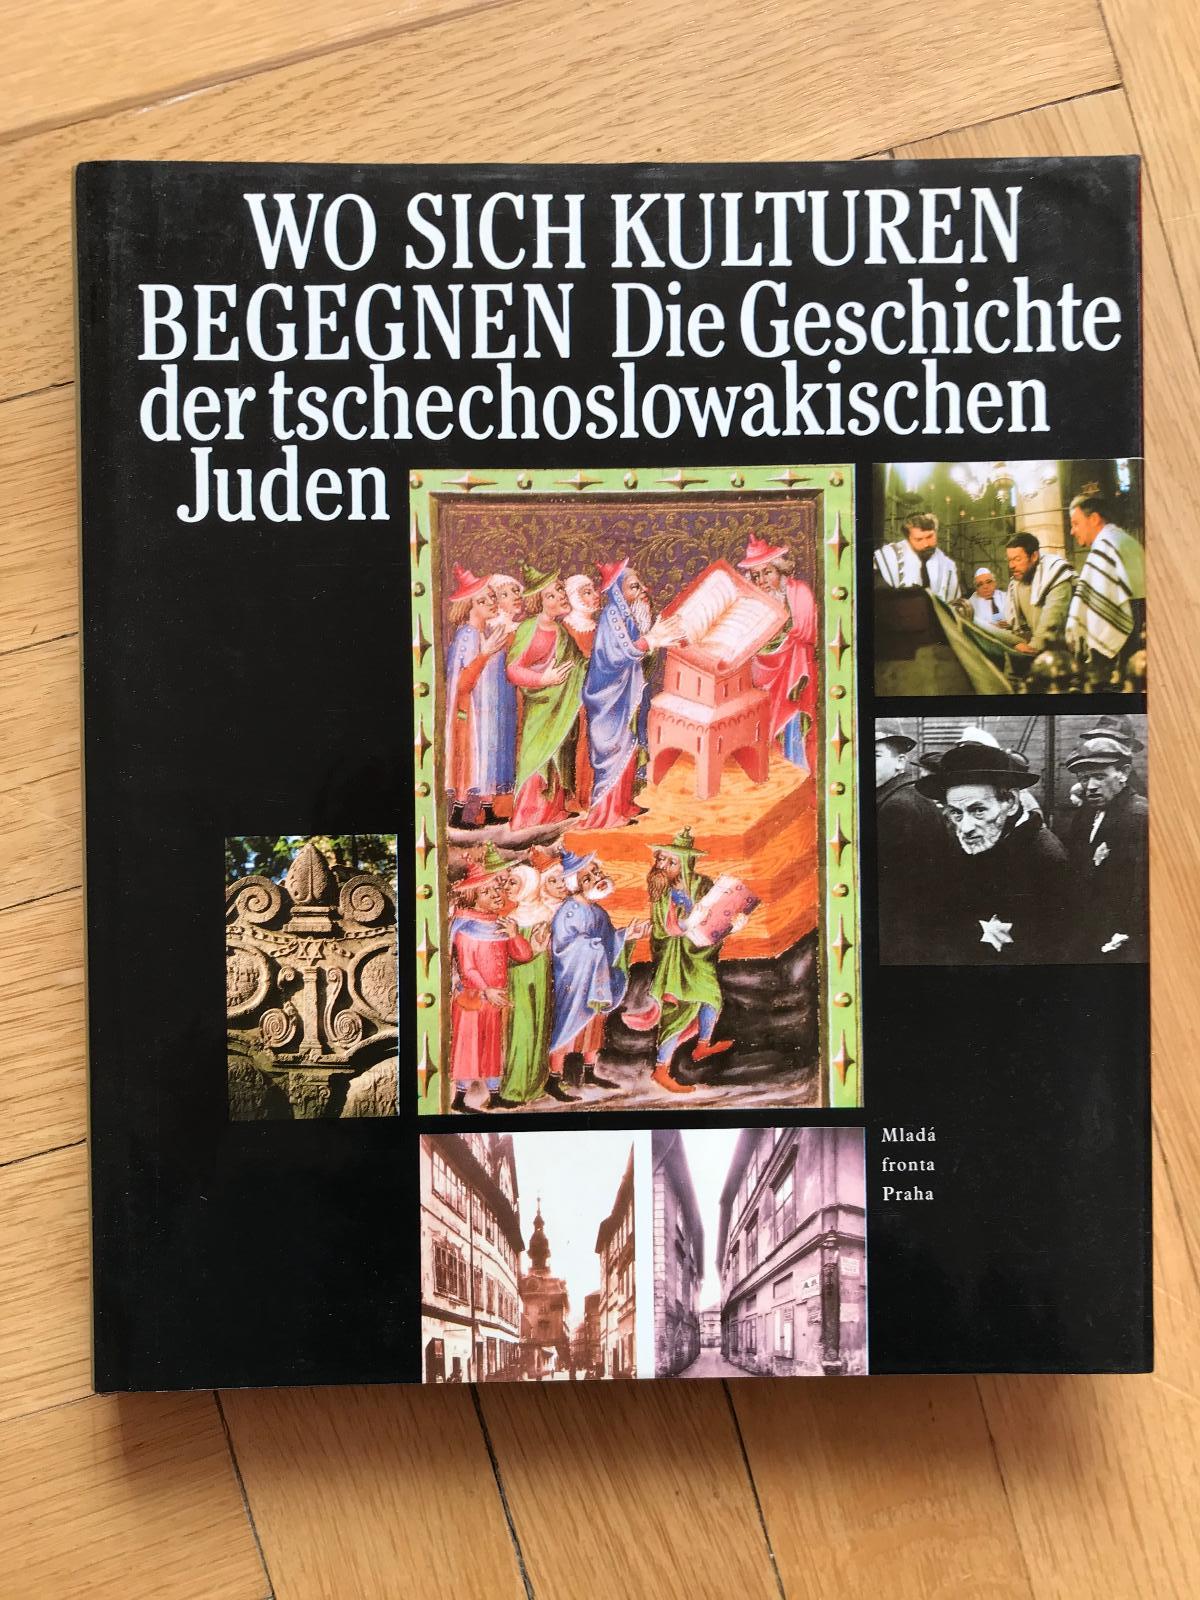 Die Geschichte der tschechoslowakischen Juden (1992, MF) – židé, Praha - Odborné knihy